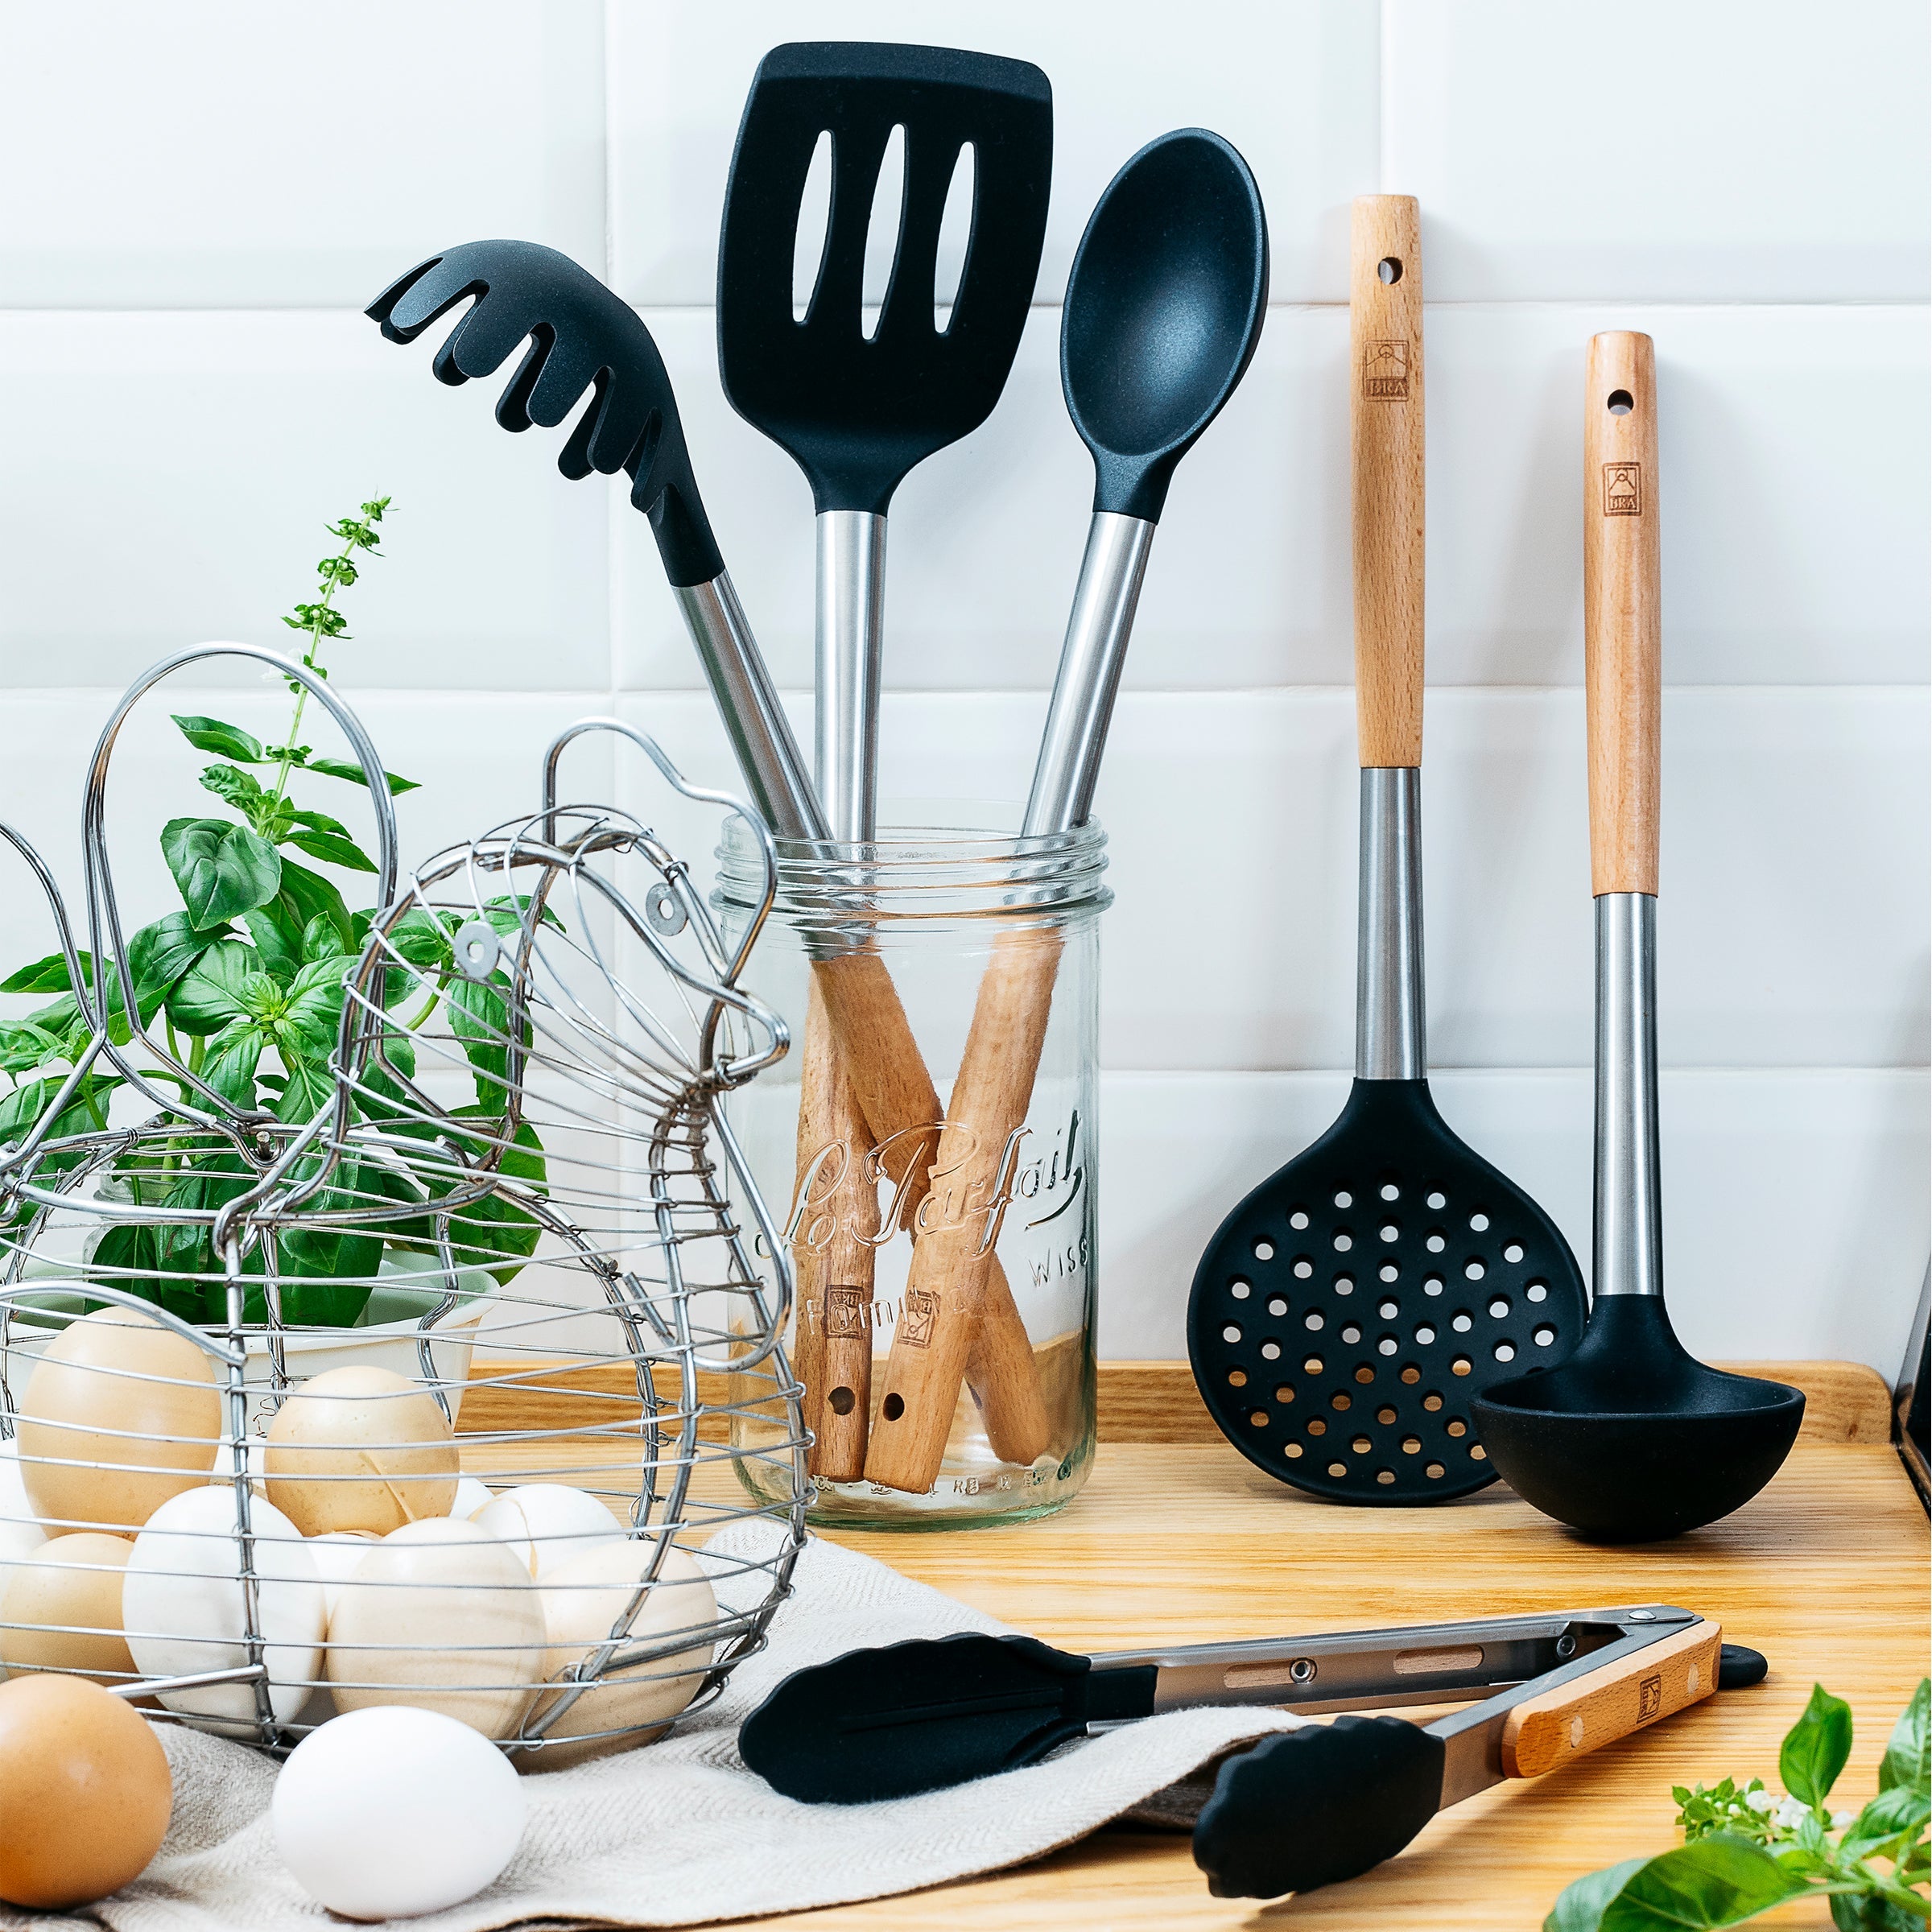 Espumadera Nature - Sartenes y utensilios de cocina profesional